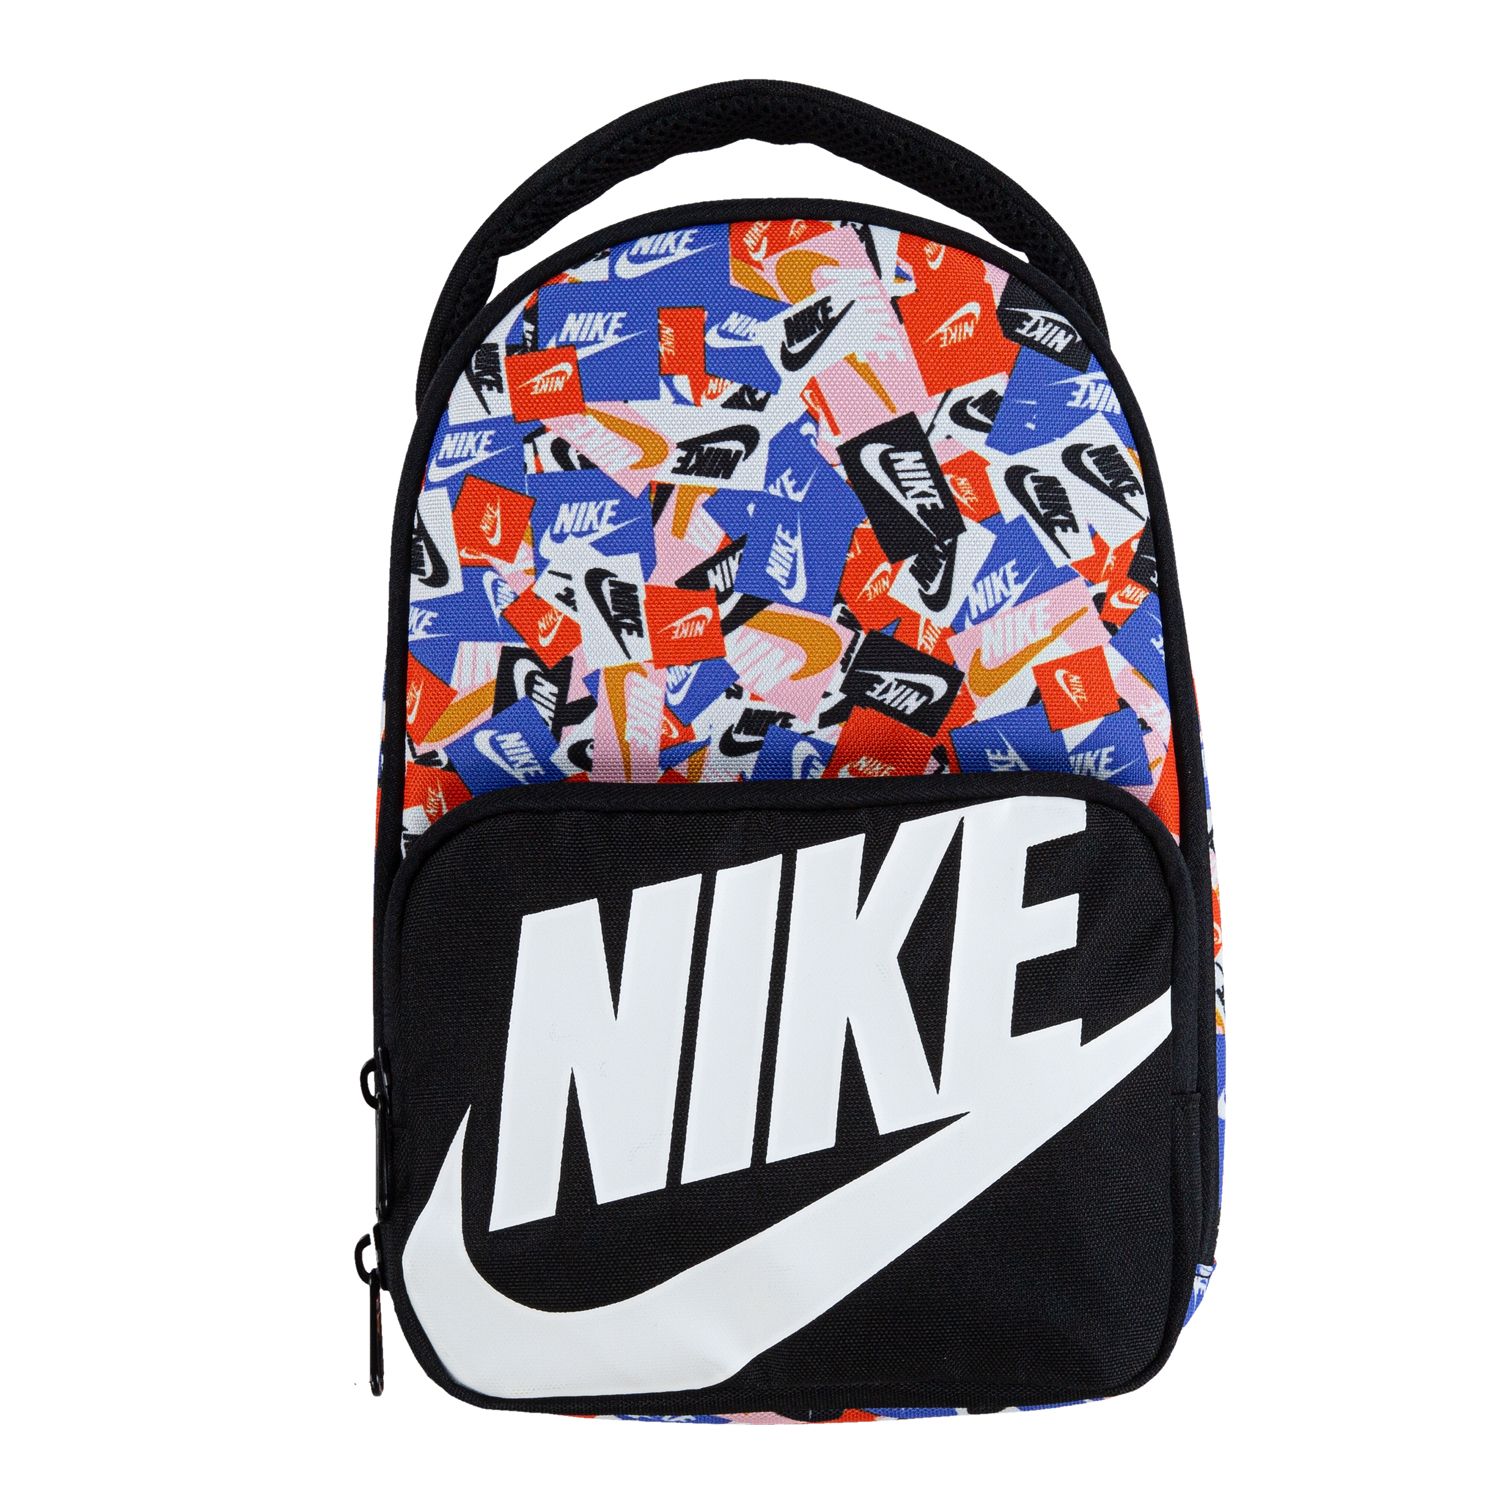 Nike Vibrant Splatter Insulated Lunch Bag